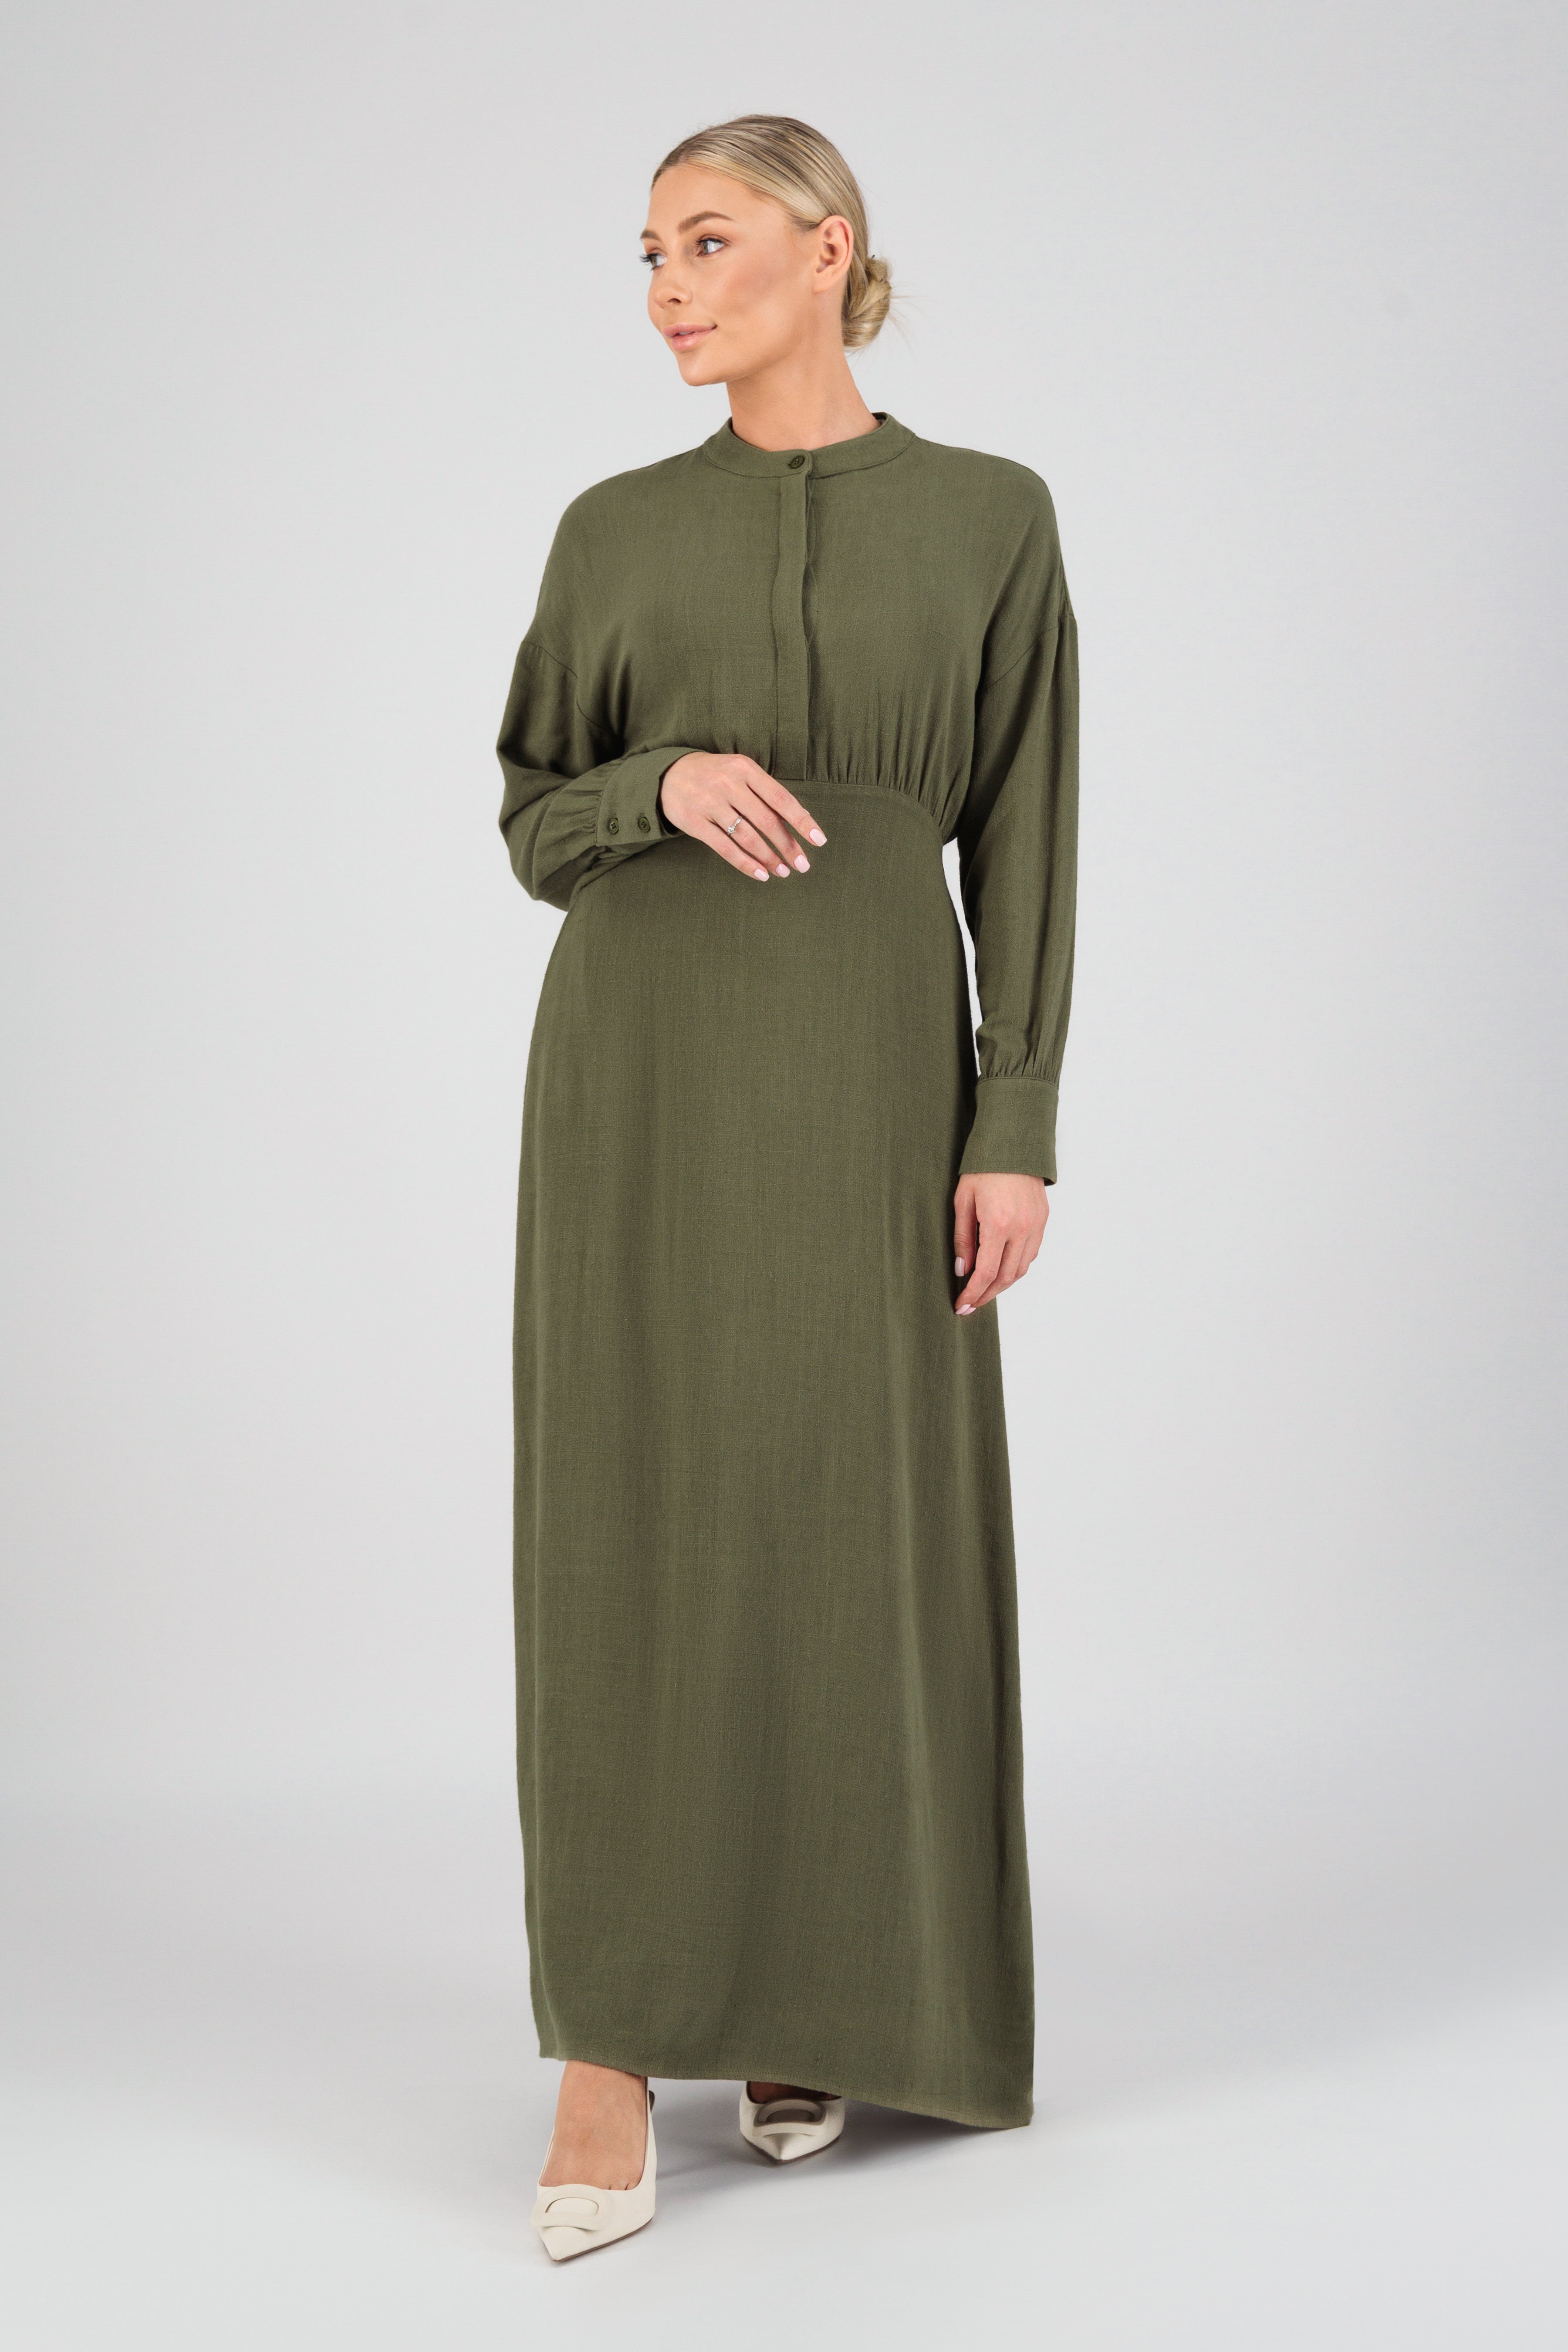 US - Linen Blend Dress - Matcha